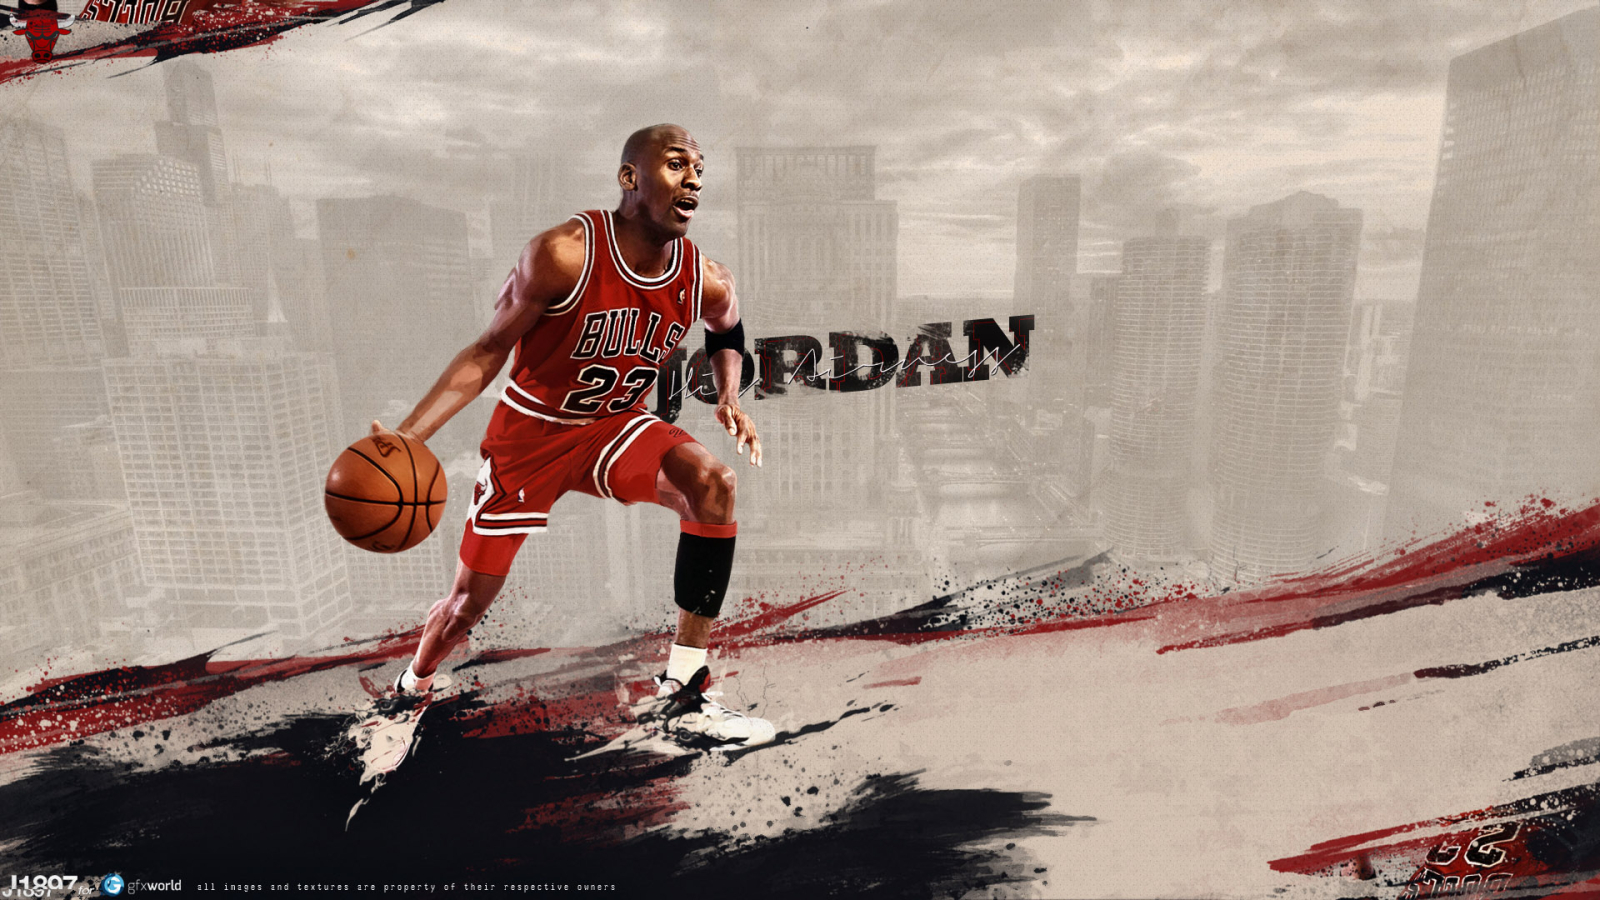 Michael Jordan for 1600 x 900 HDTV resolution